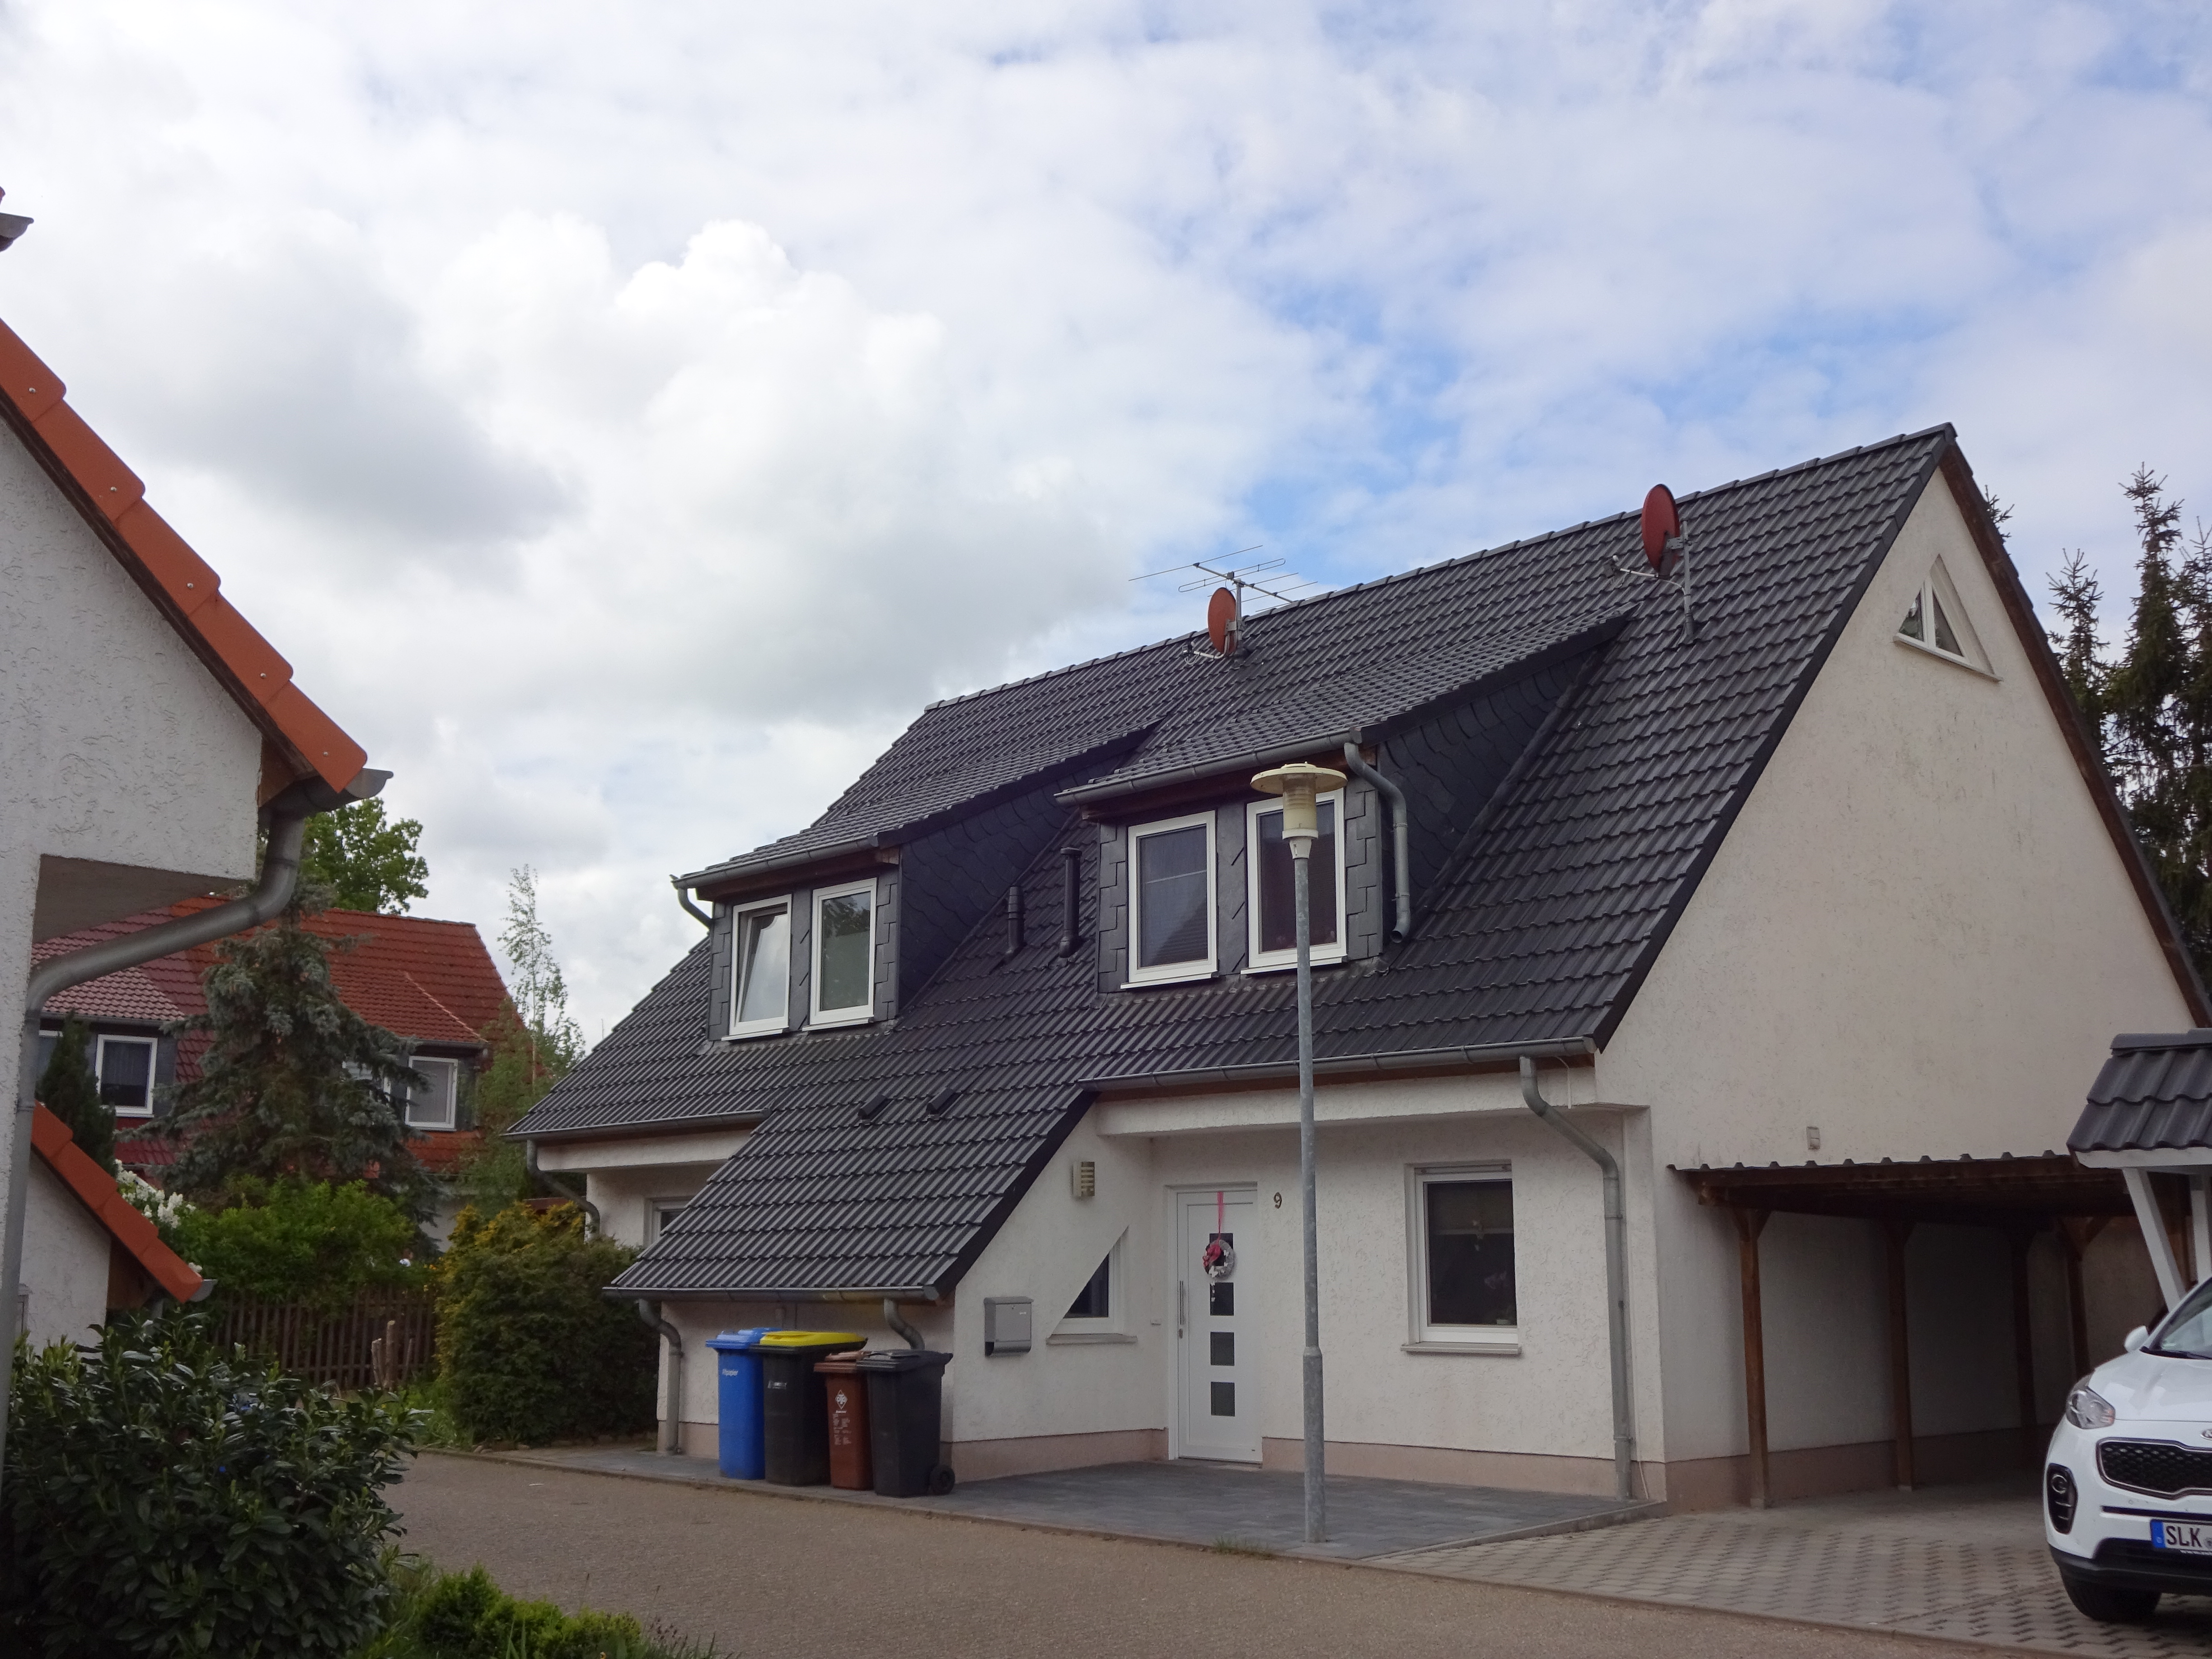 Immobilienvermarktung und Verwaltung Sylvia Lampe, Brandtstraße 18a in Magdeburg